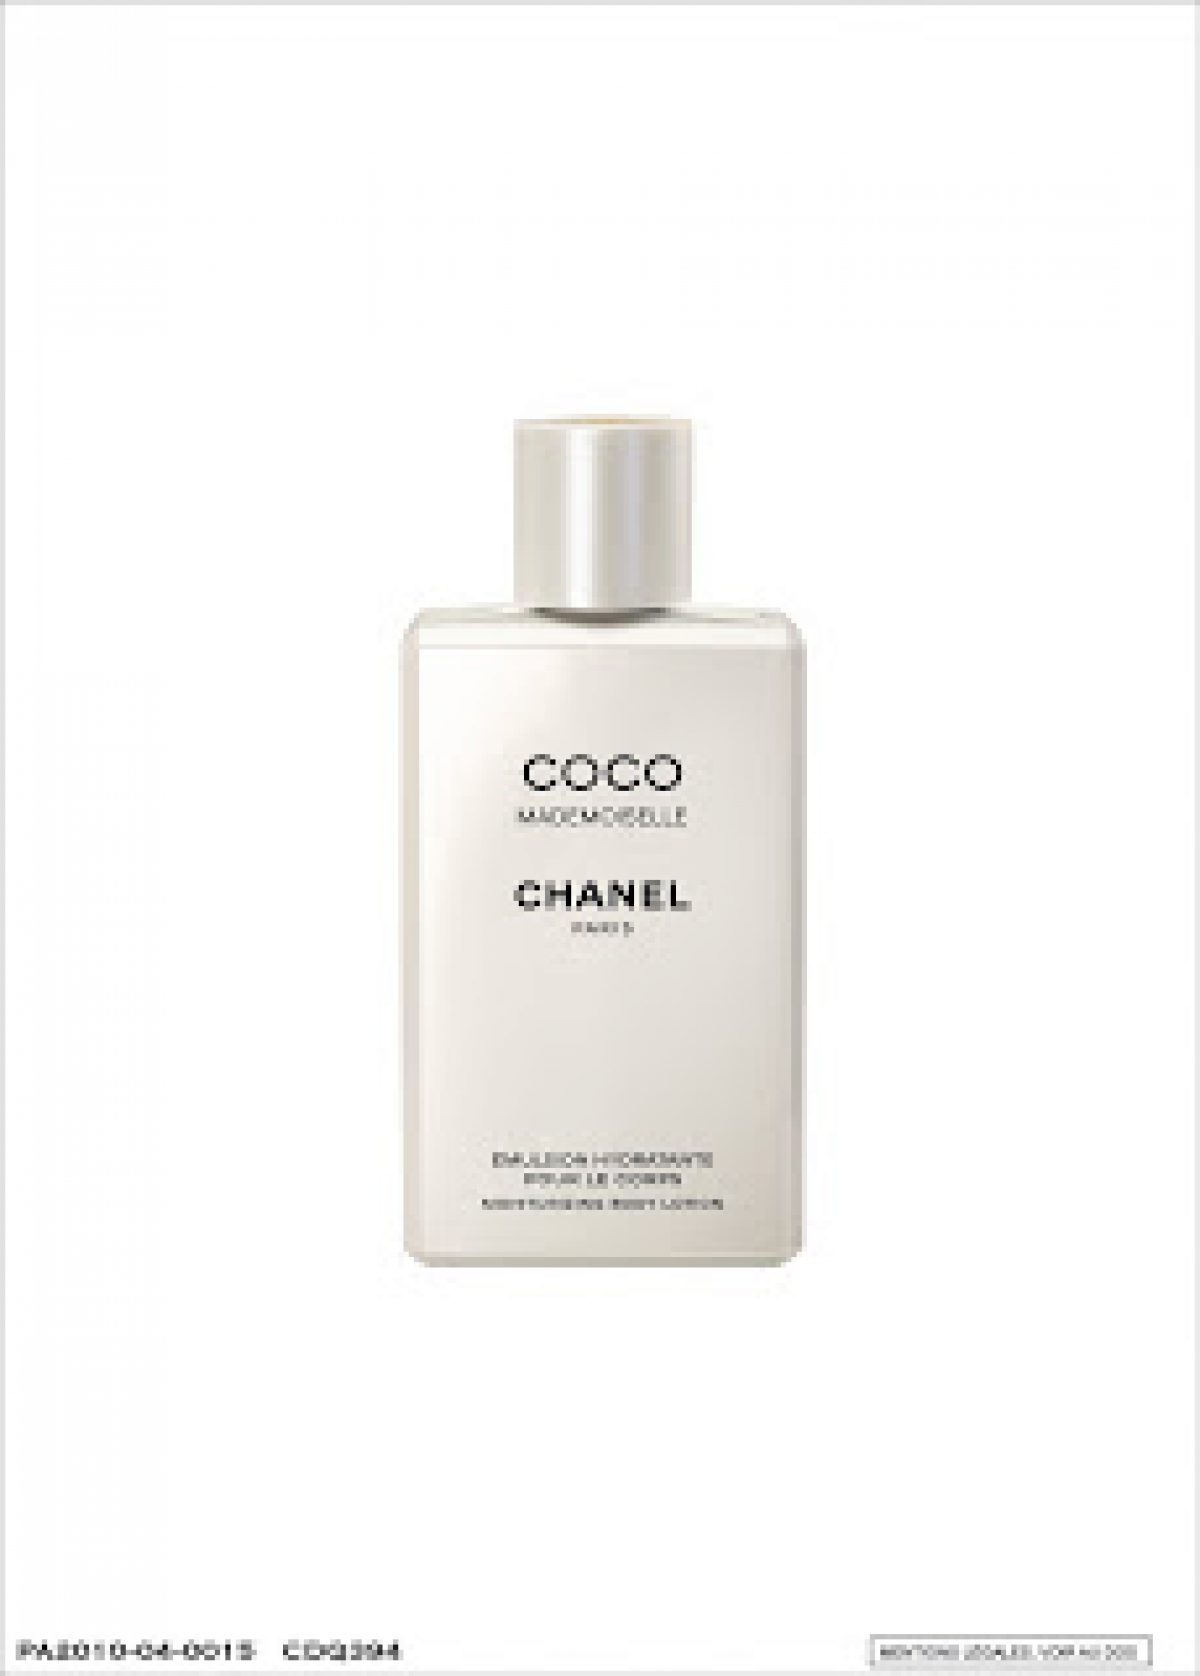 Chanel COCO Mademoiselle Velvet Body Oil 6.8 Ounce 